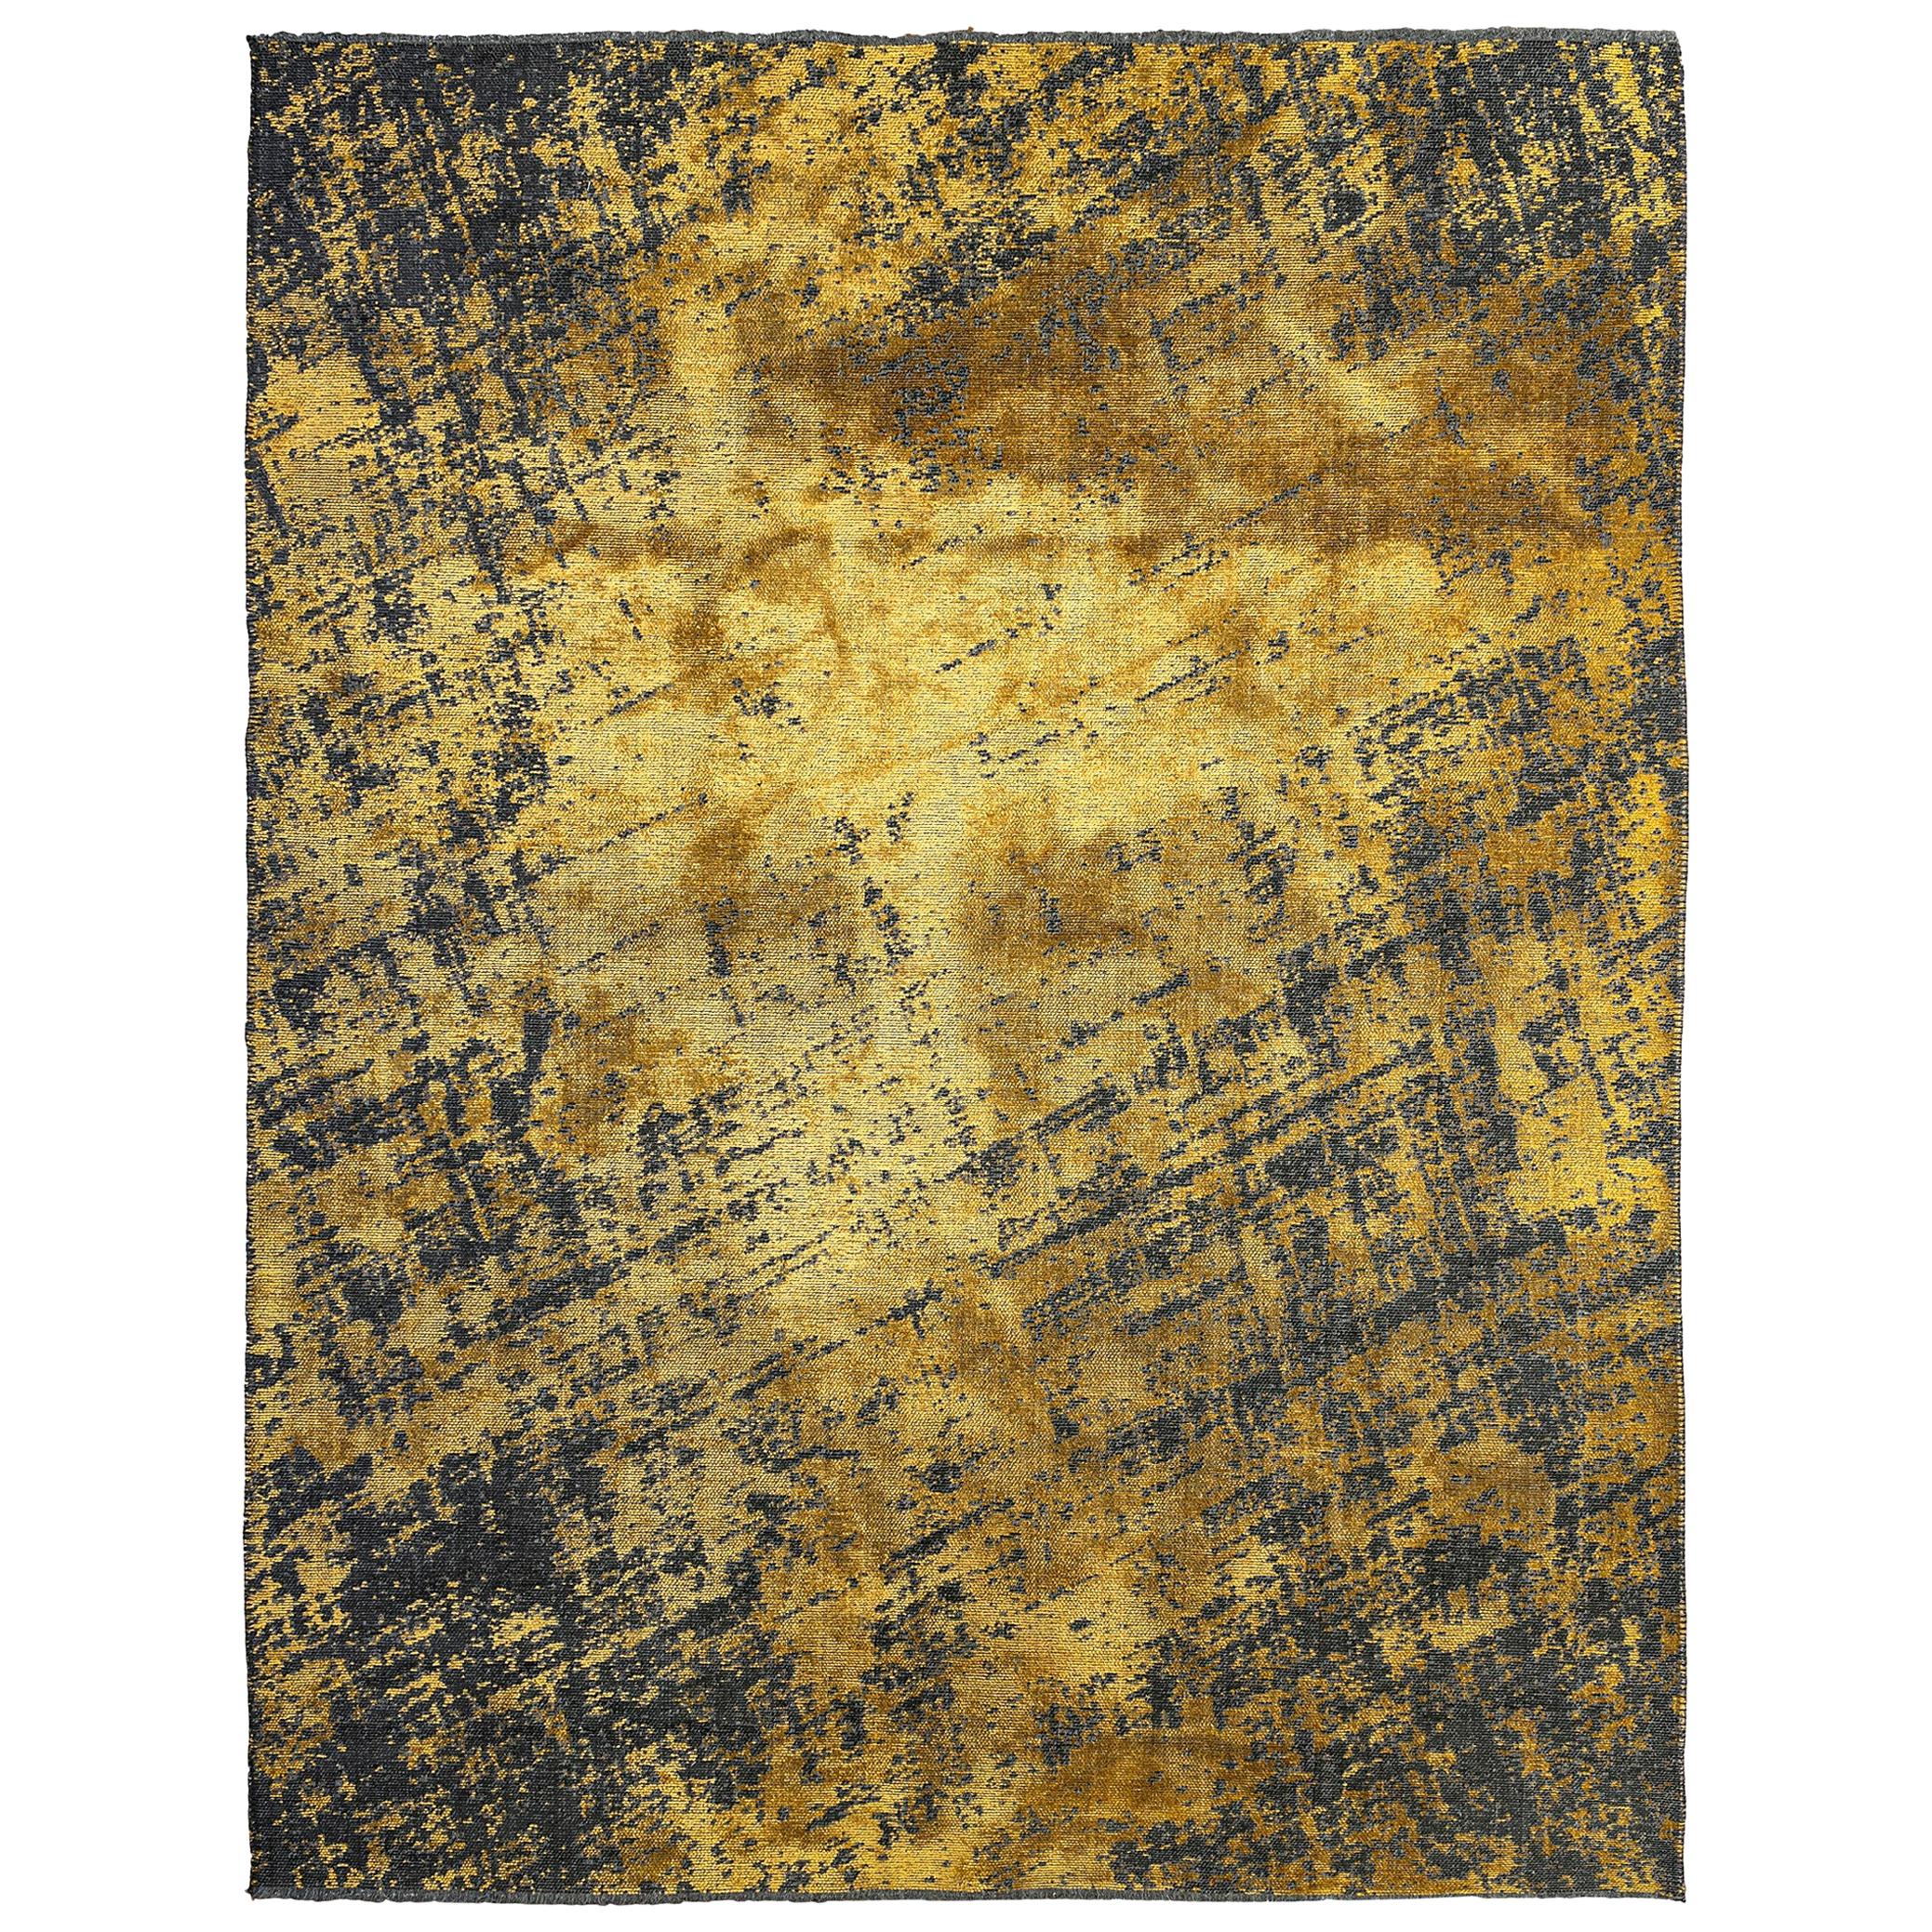 Moderner, weicher Teppich mit abstraktem Fadenmuster in Gelbgold und Anthrazitgrau